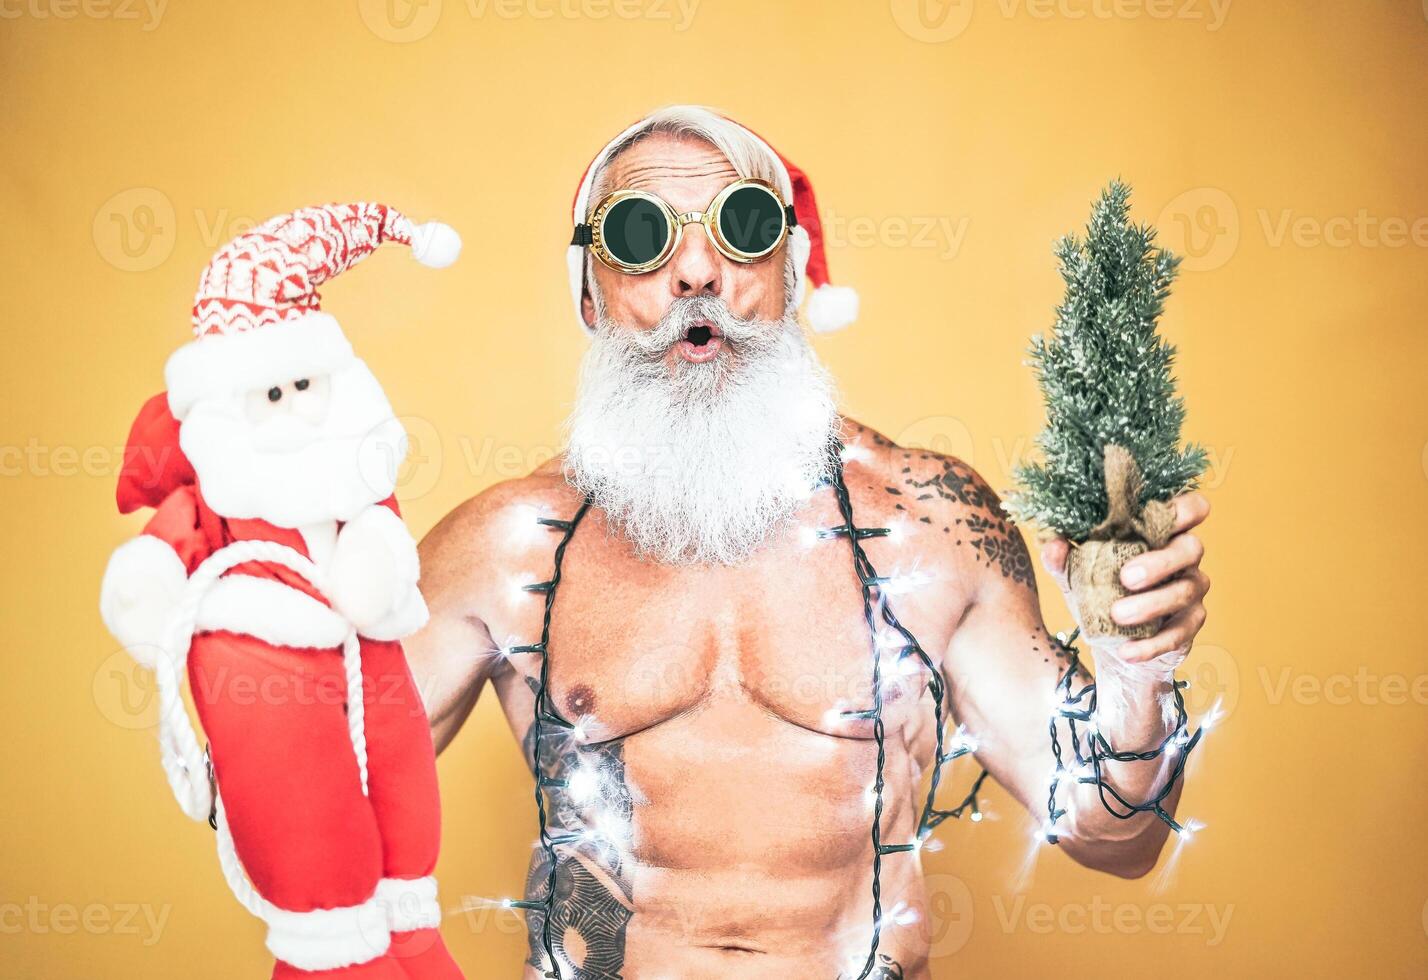 contento ajuste Papa Noel claus equipado con blanco Navidad luces - de moda barba hipster mayor participación un mini Papa Noel claus marioneta y Navidad árbol - celebracion y Días festivos concepto foto